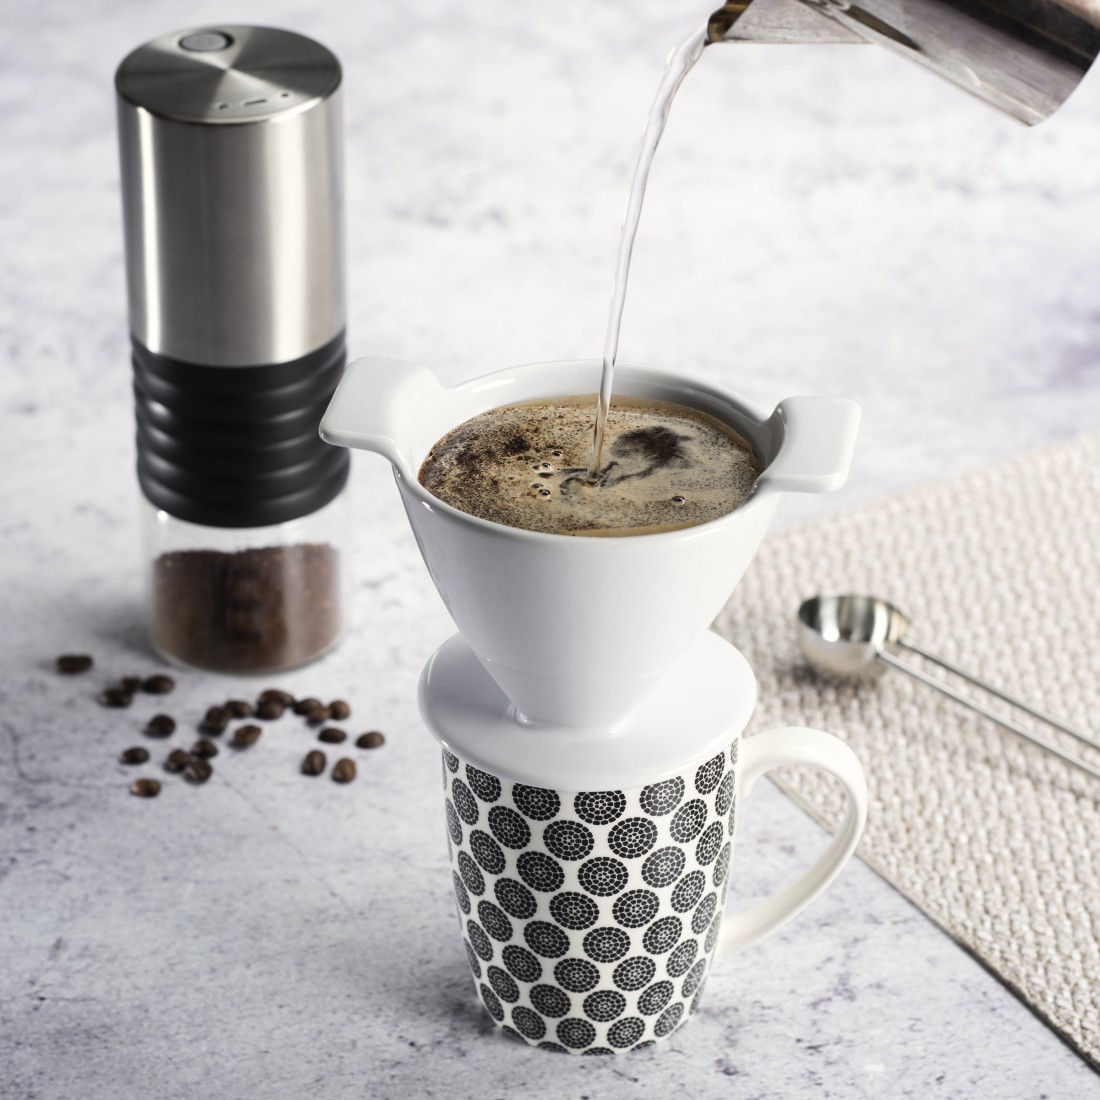 awx5 Druckfähige Anwendung 5 - Xavax, Kaffeefilter aus Porzellan, Größe 4, Weiß